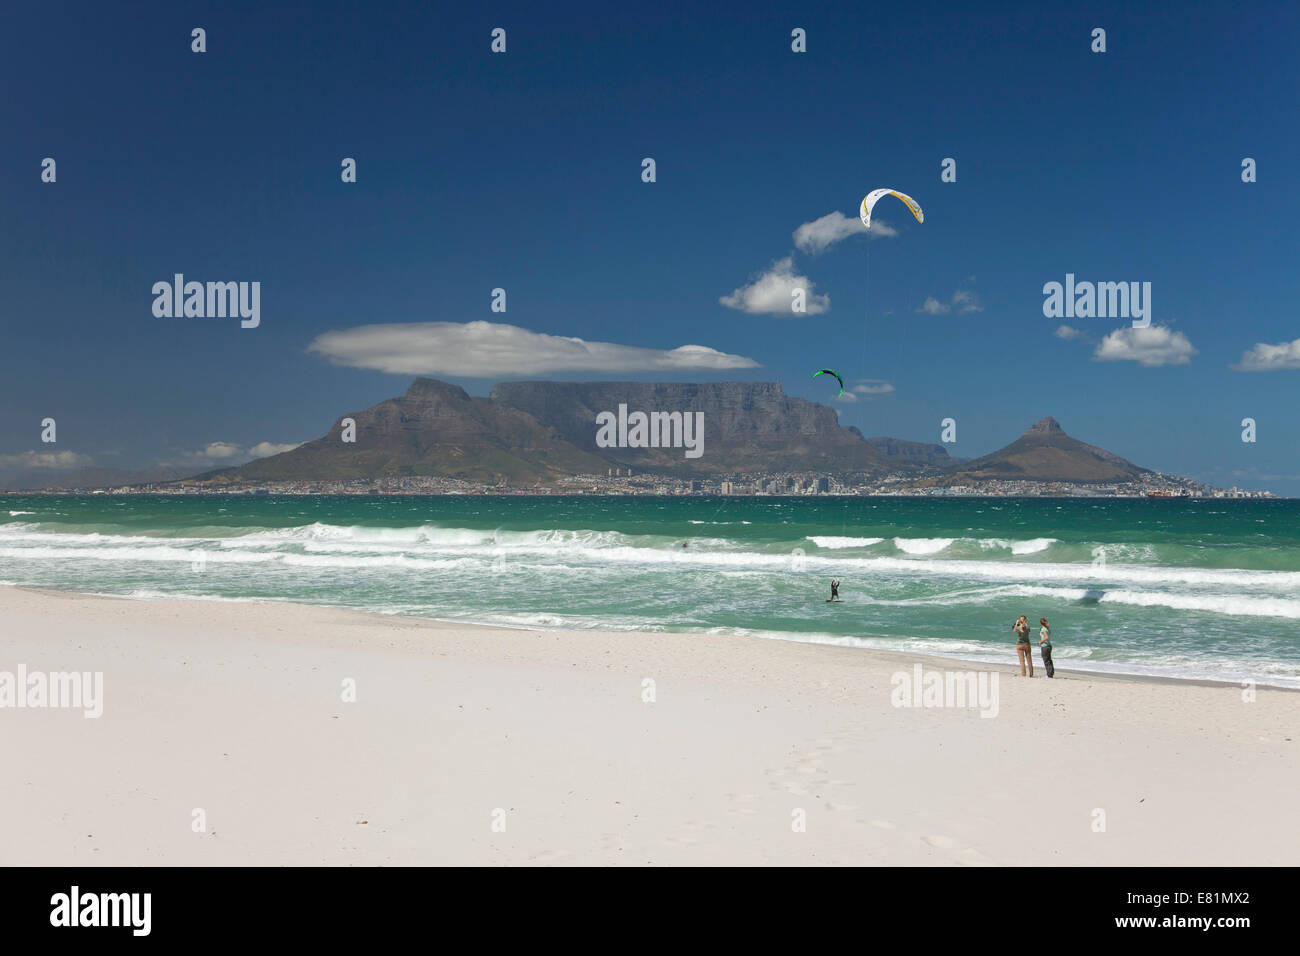 La playa de Bloubergstrand, mirando hacia Ciudad del Cabo y Table Mountain, Western Cape, Sudáfrica Foto de stock